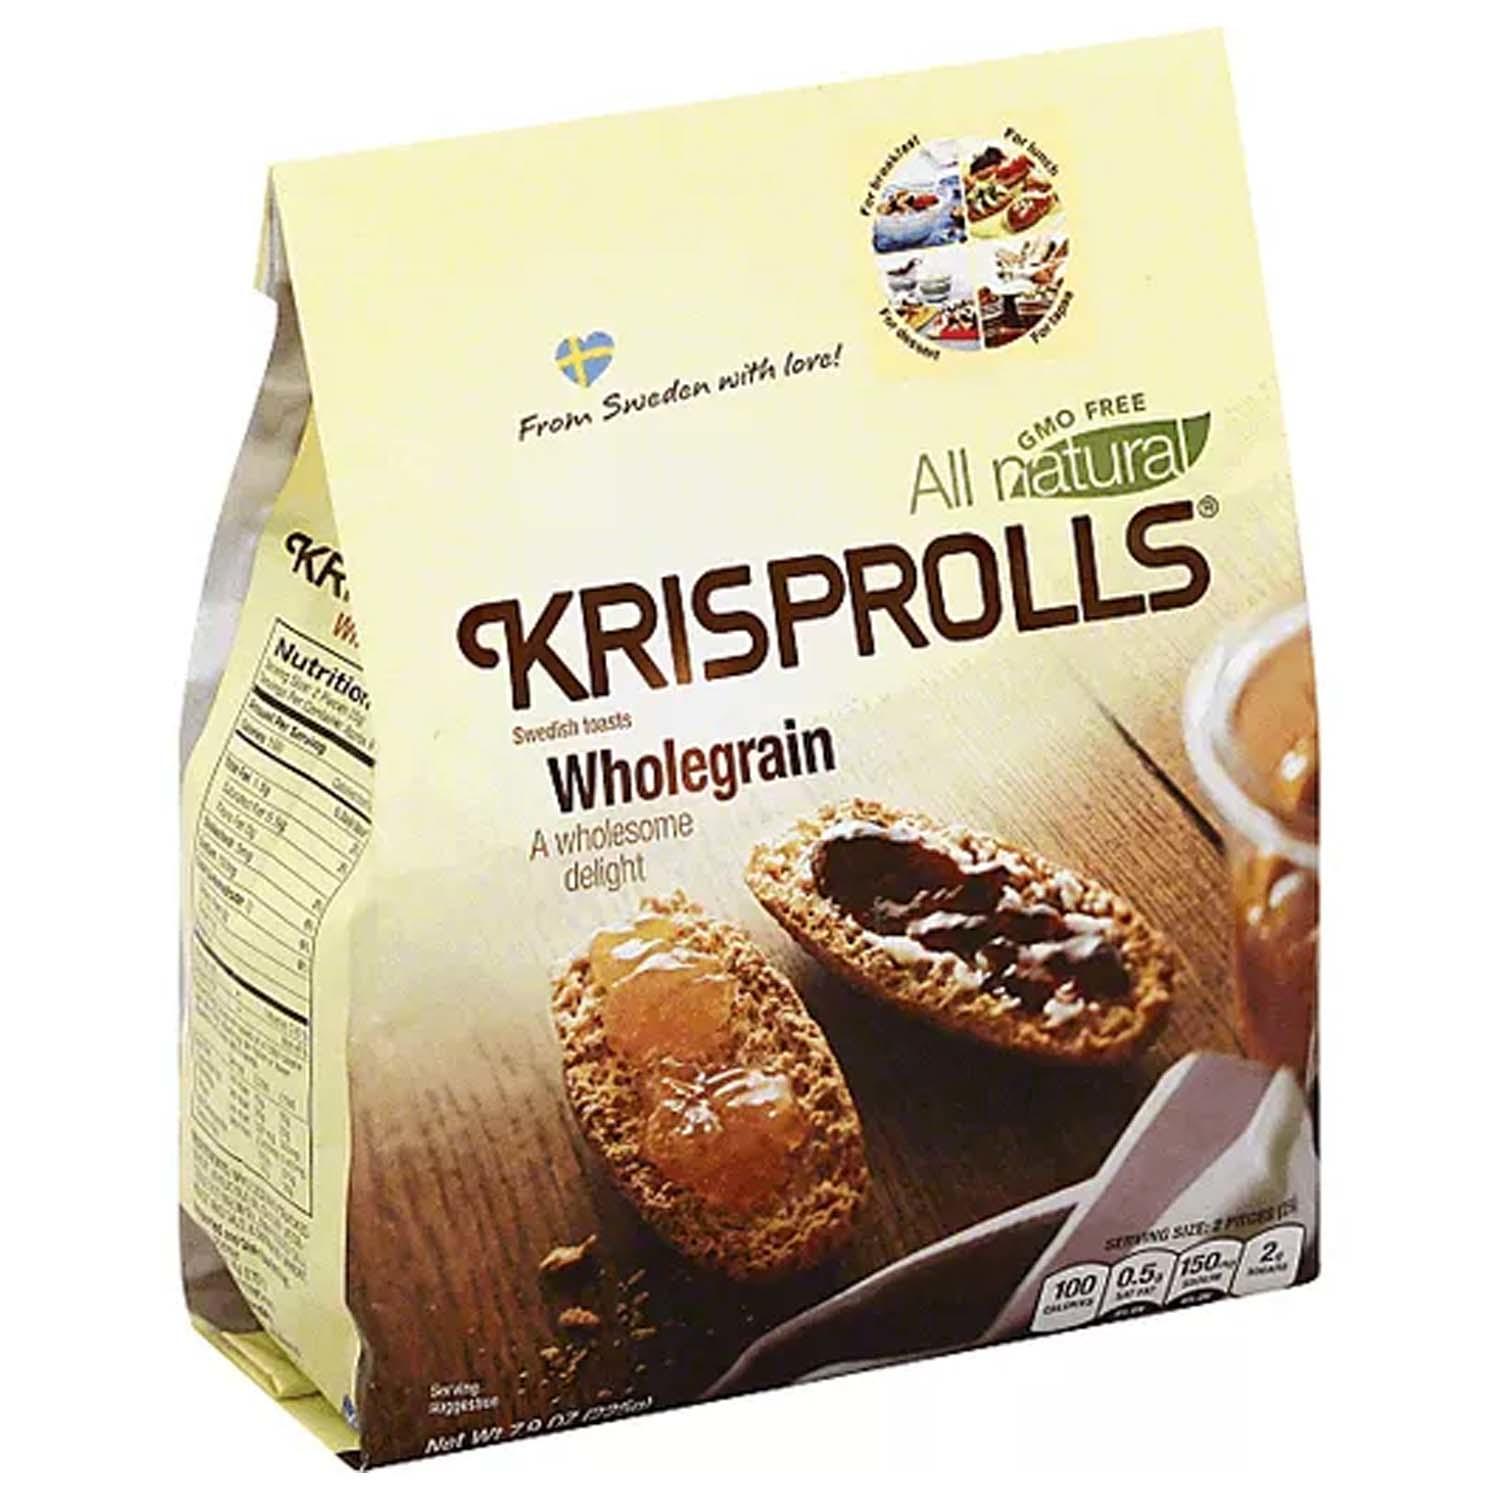 Buy Krisprolls Whole Grain Crispbread (225g) cheaply